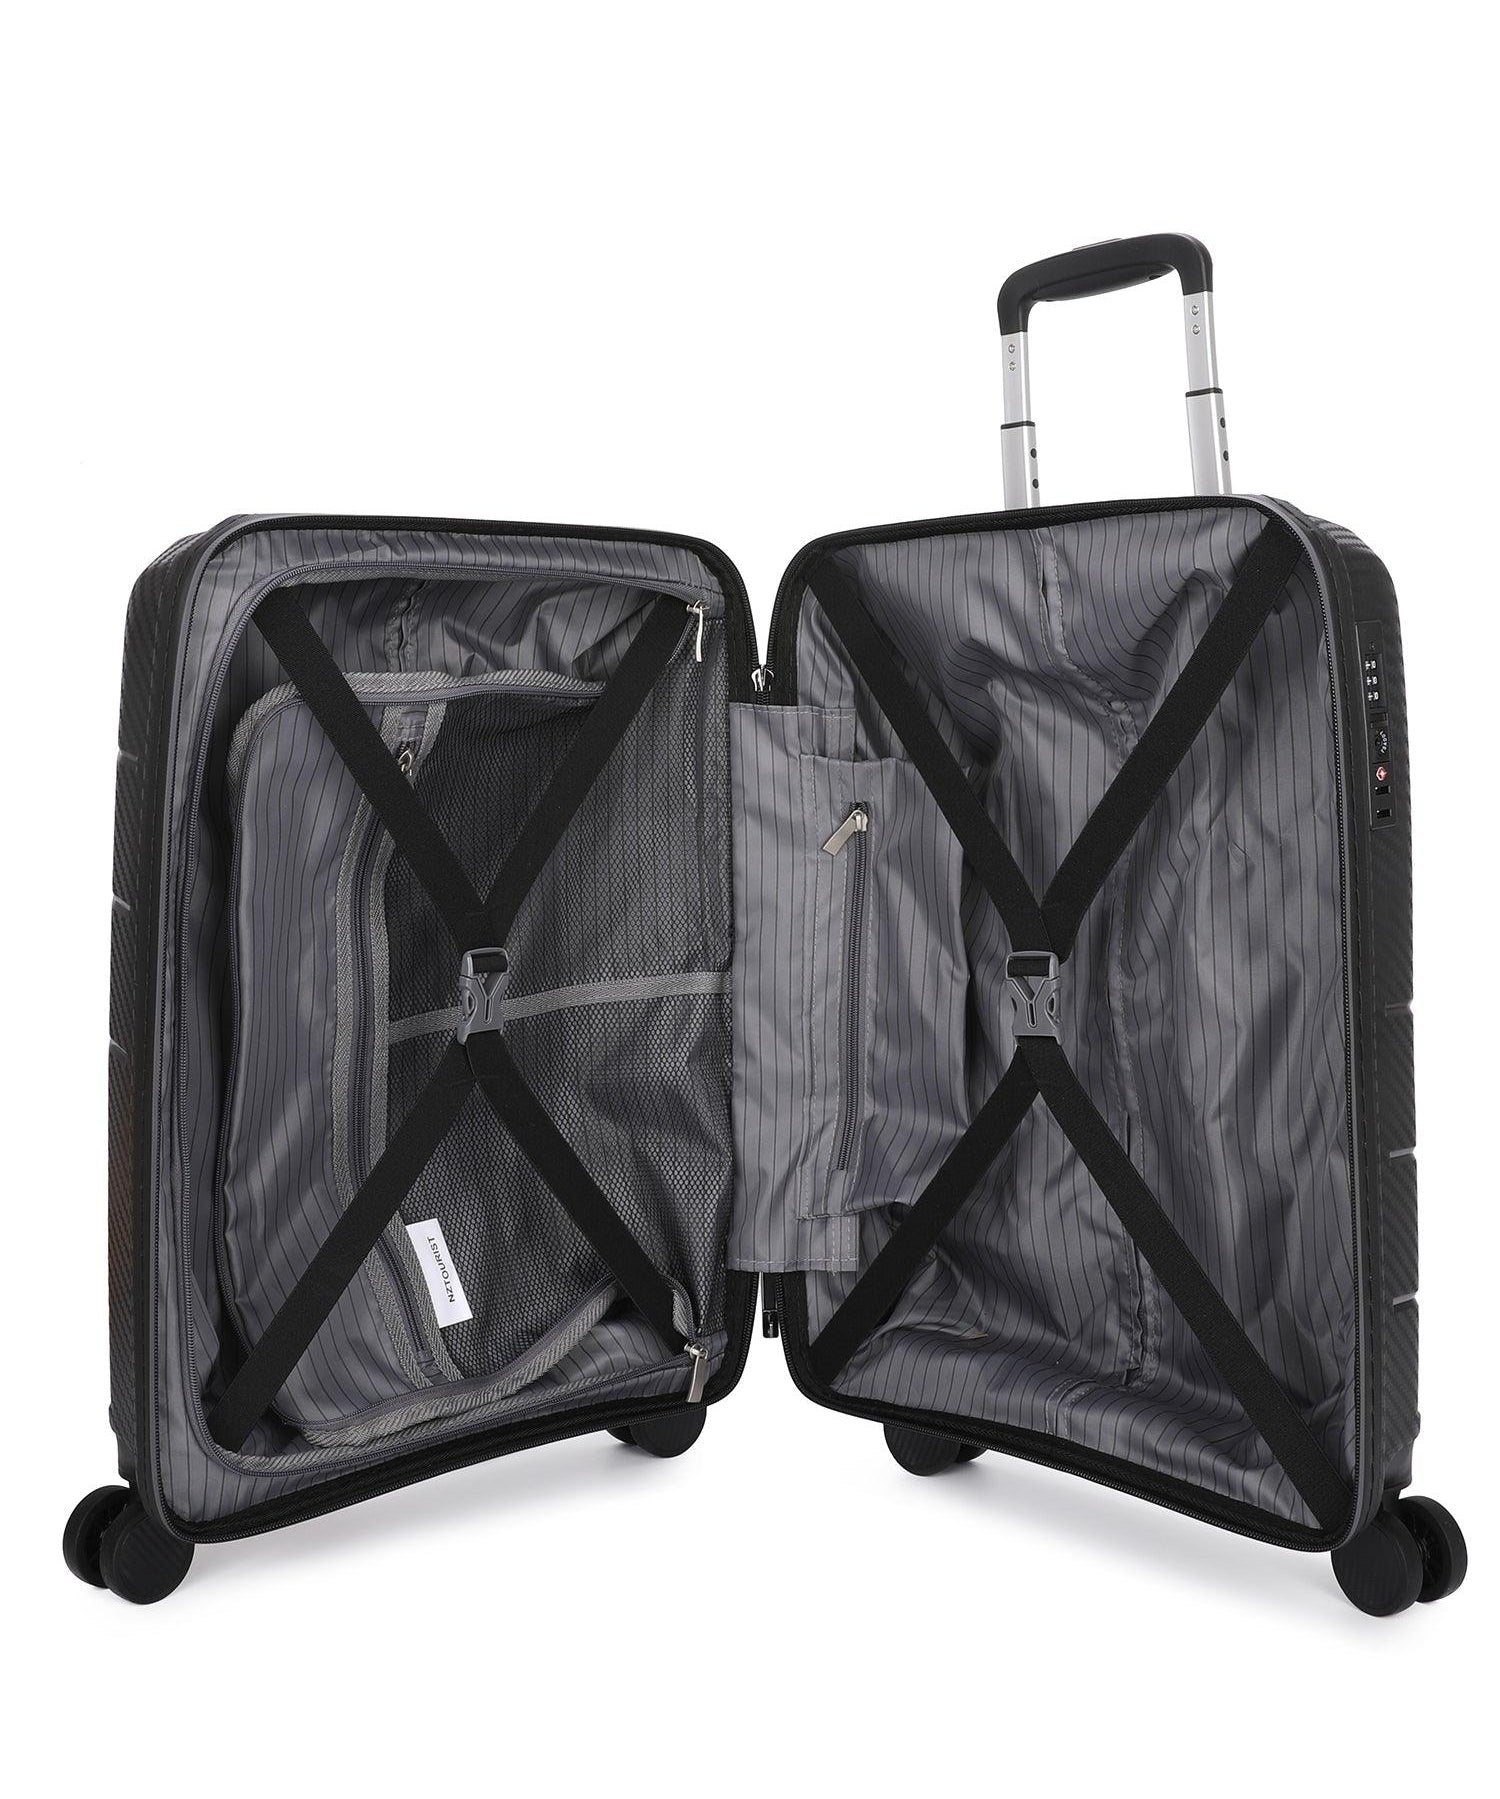 NZTourist Ultra-Light Traveller 56cm Suitcase - Black - San Michelle Bags suitcase nz